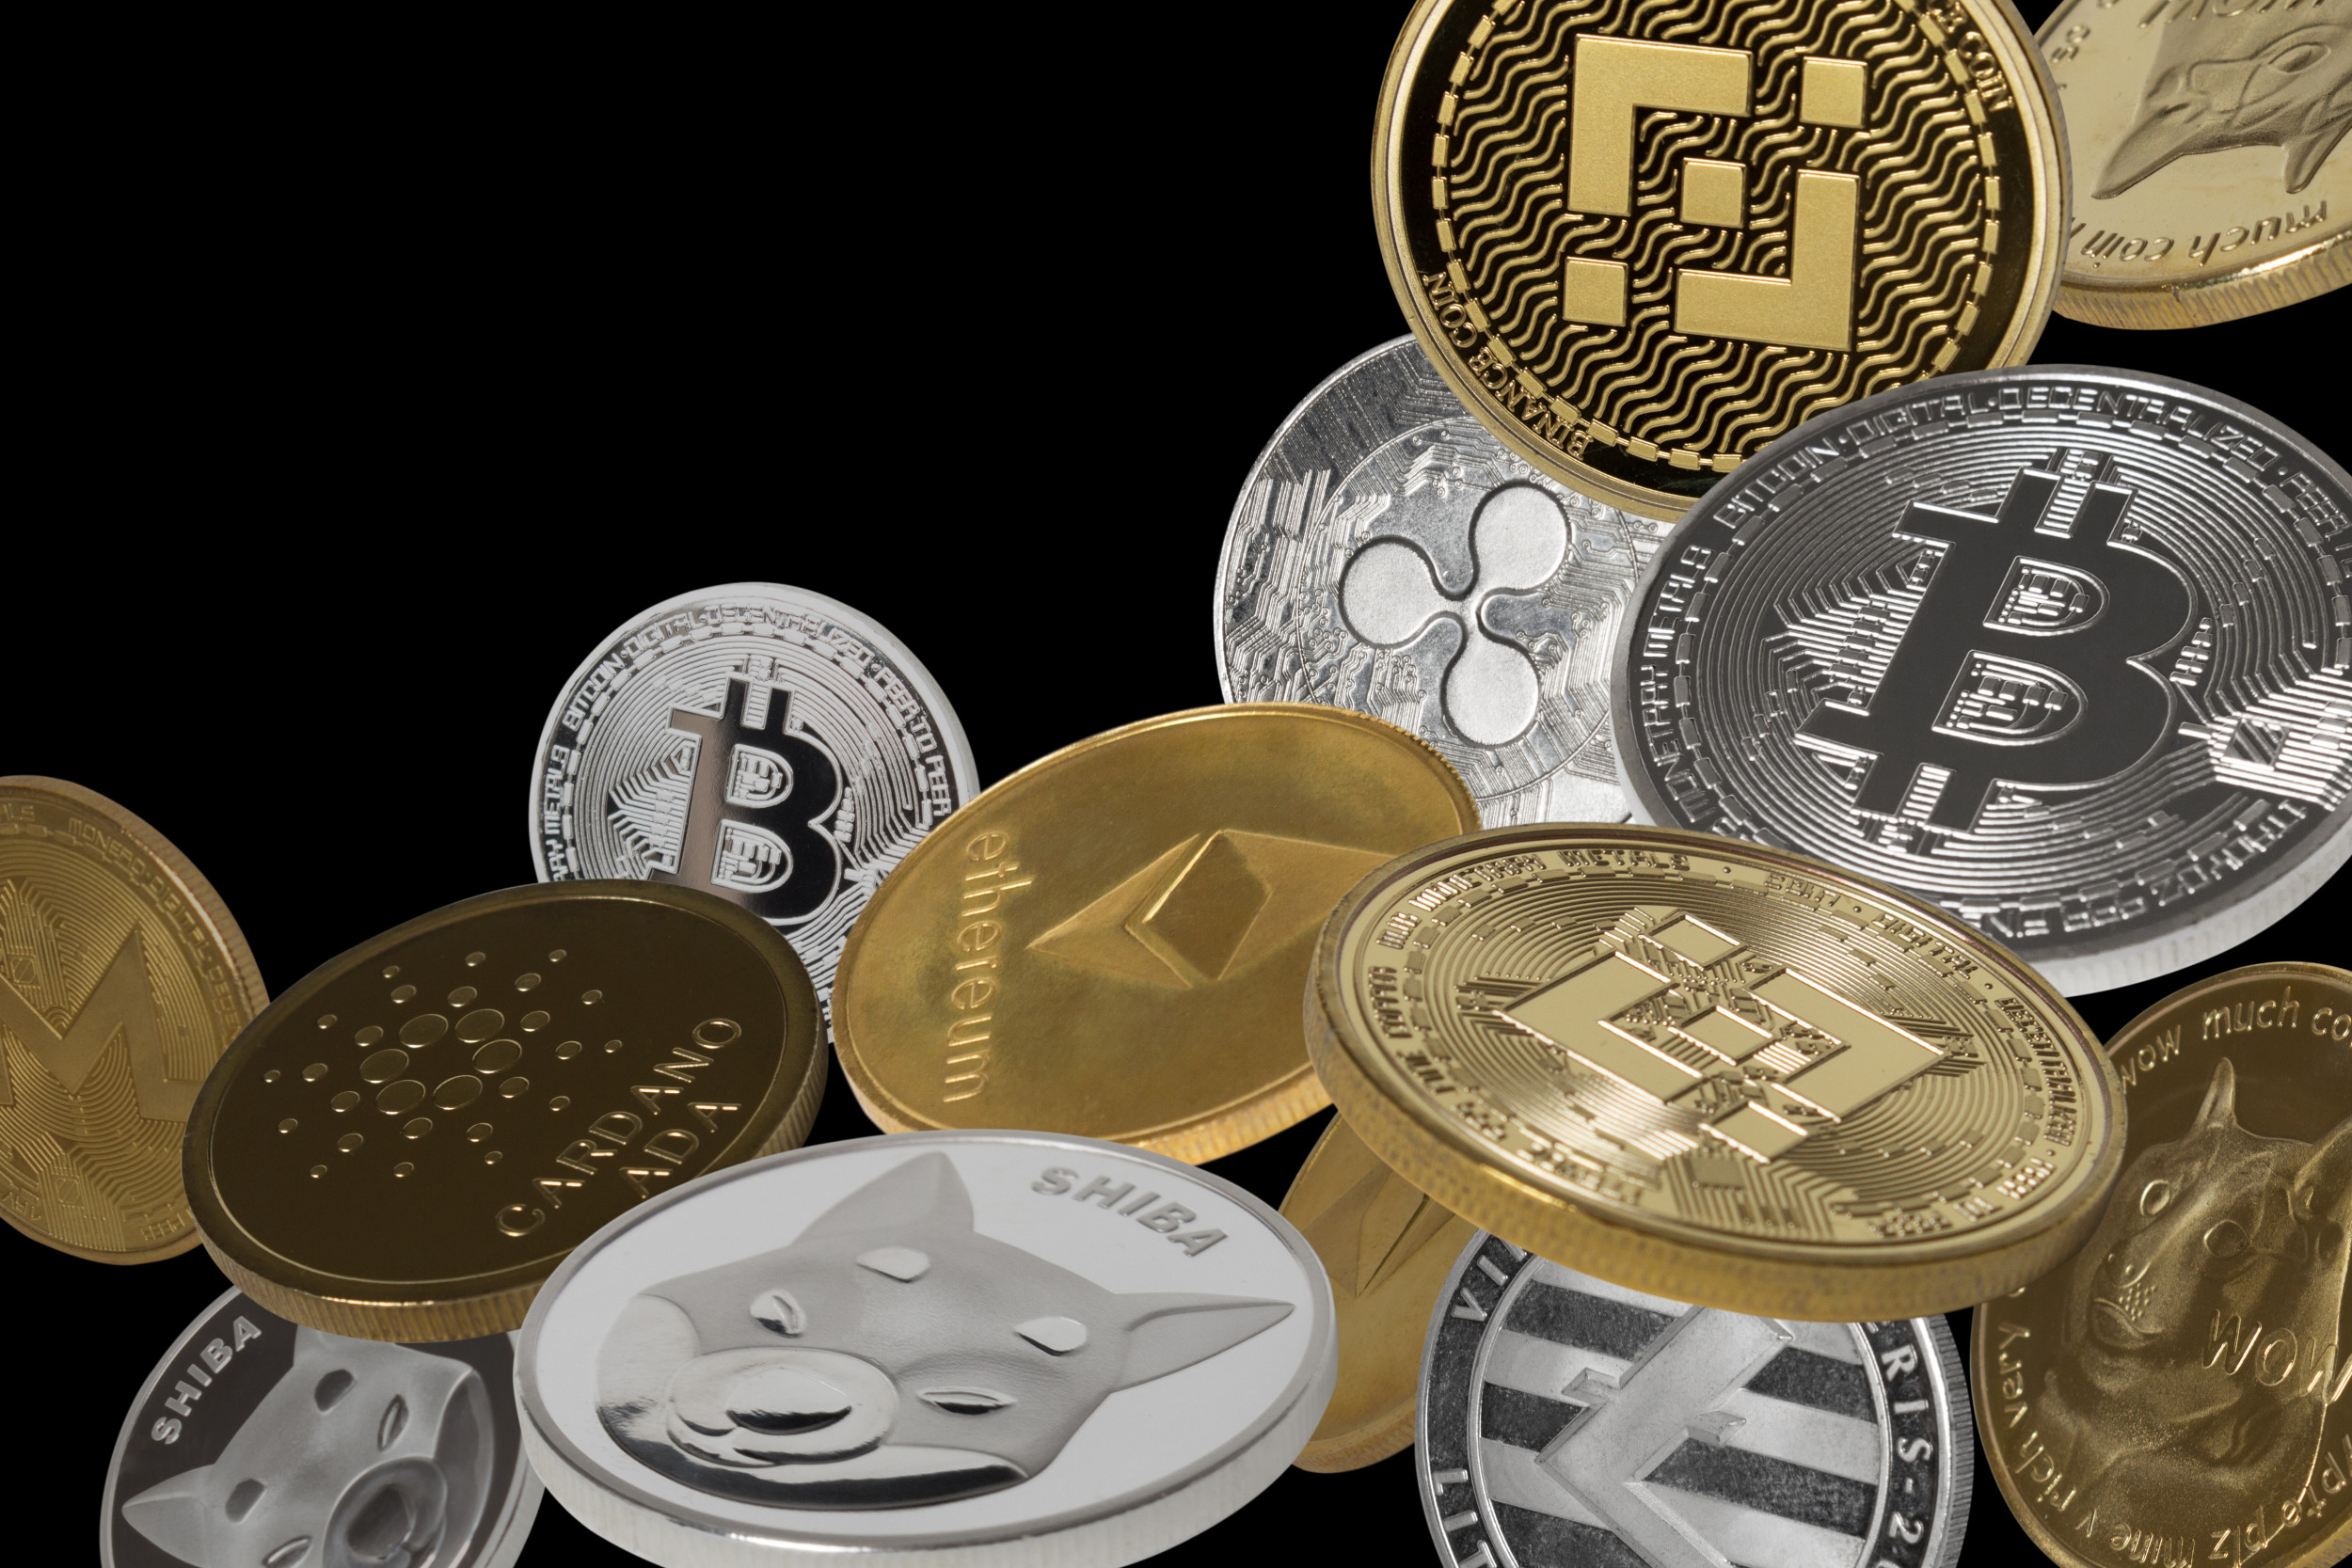 Crypto coinsf orum 0.00141344 btc value